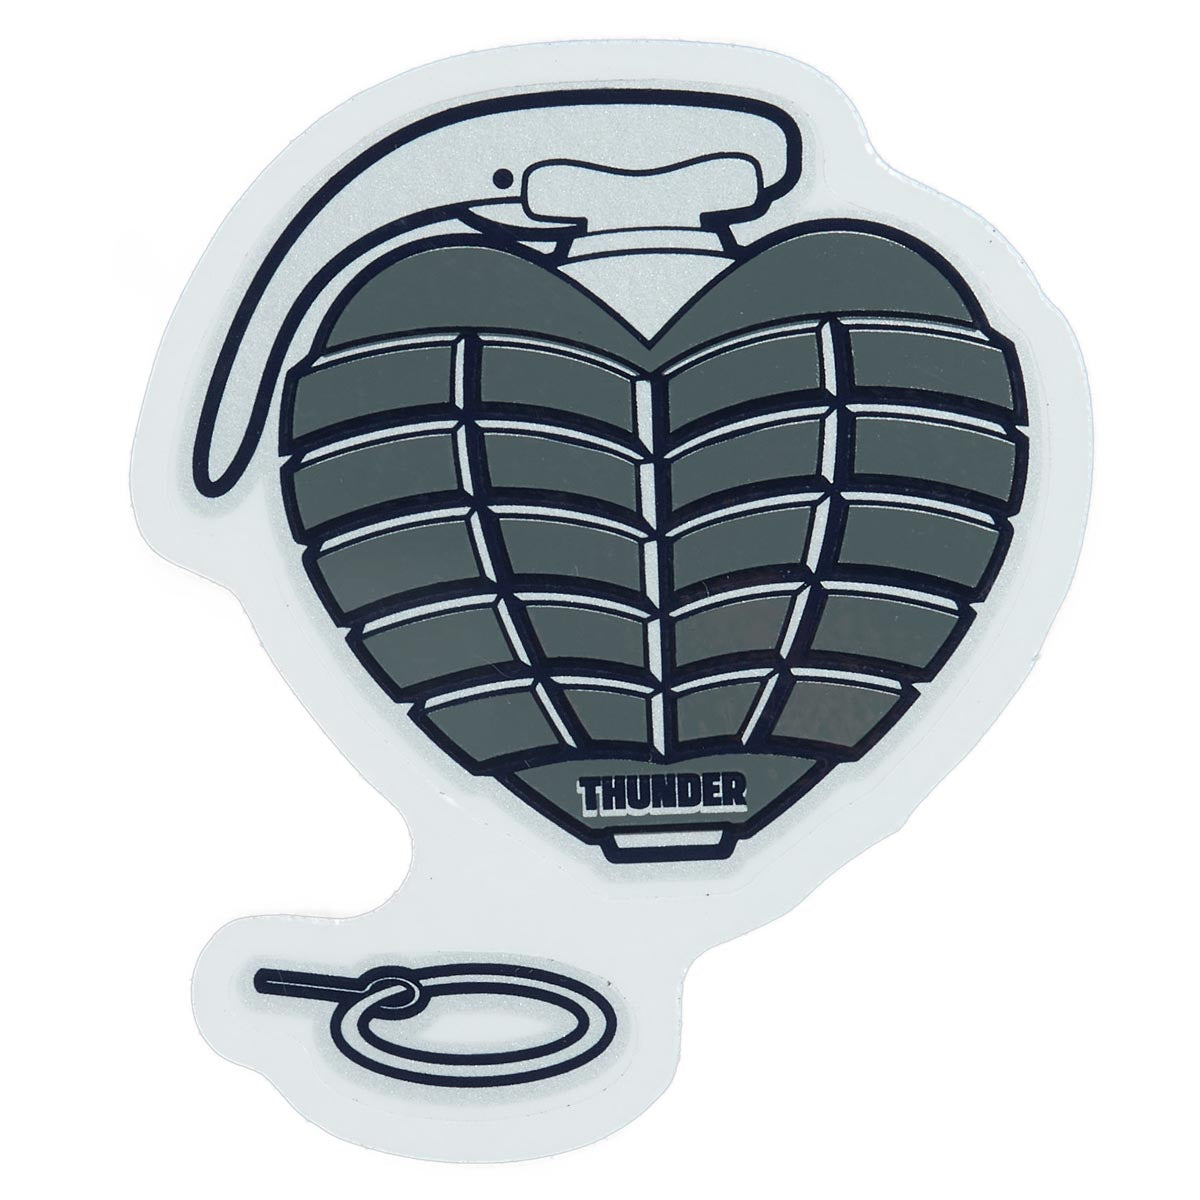 Thunder OG Grenade Sticker - Grey image 1